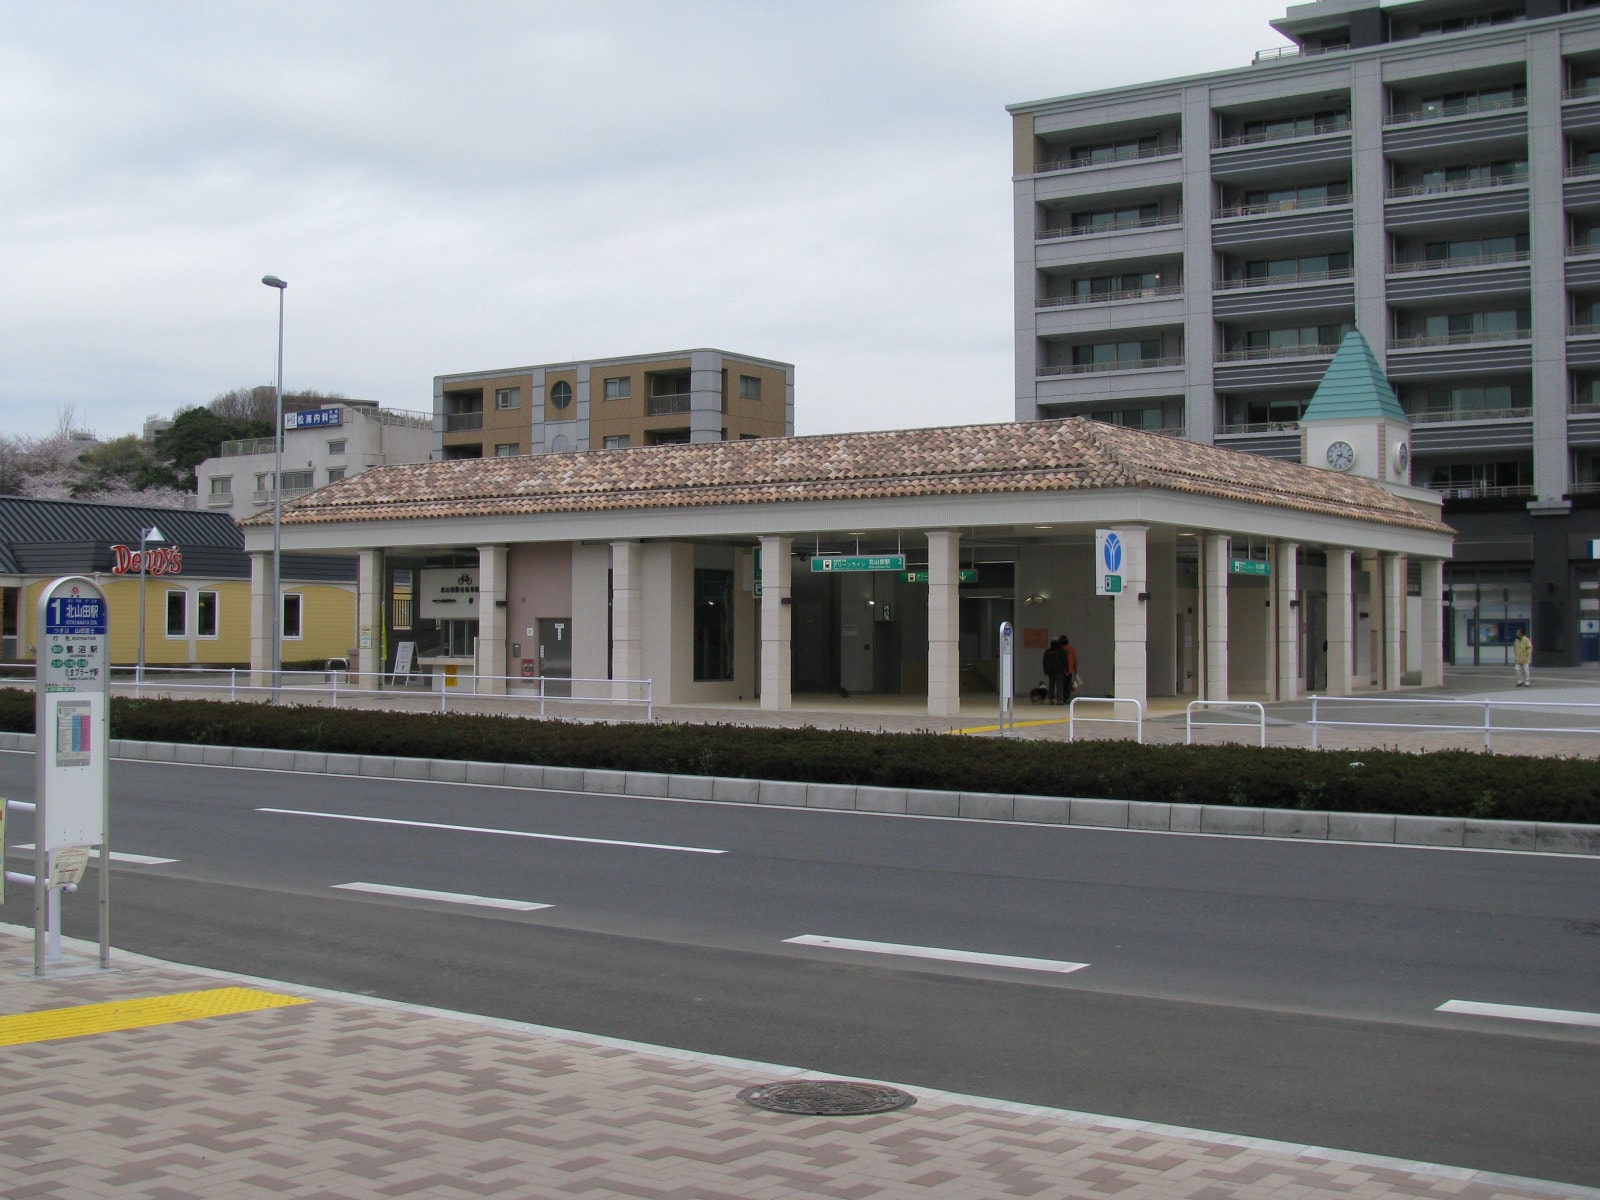 北山田駅